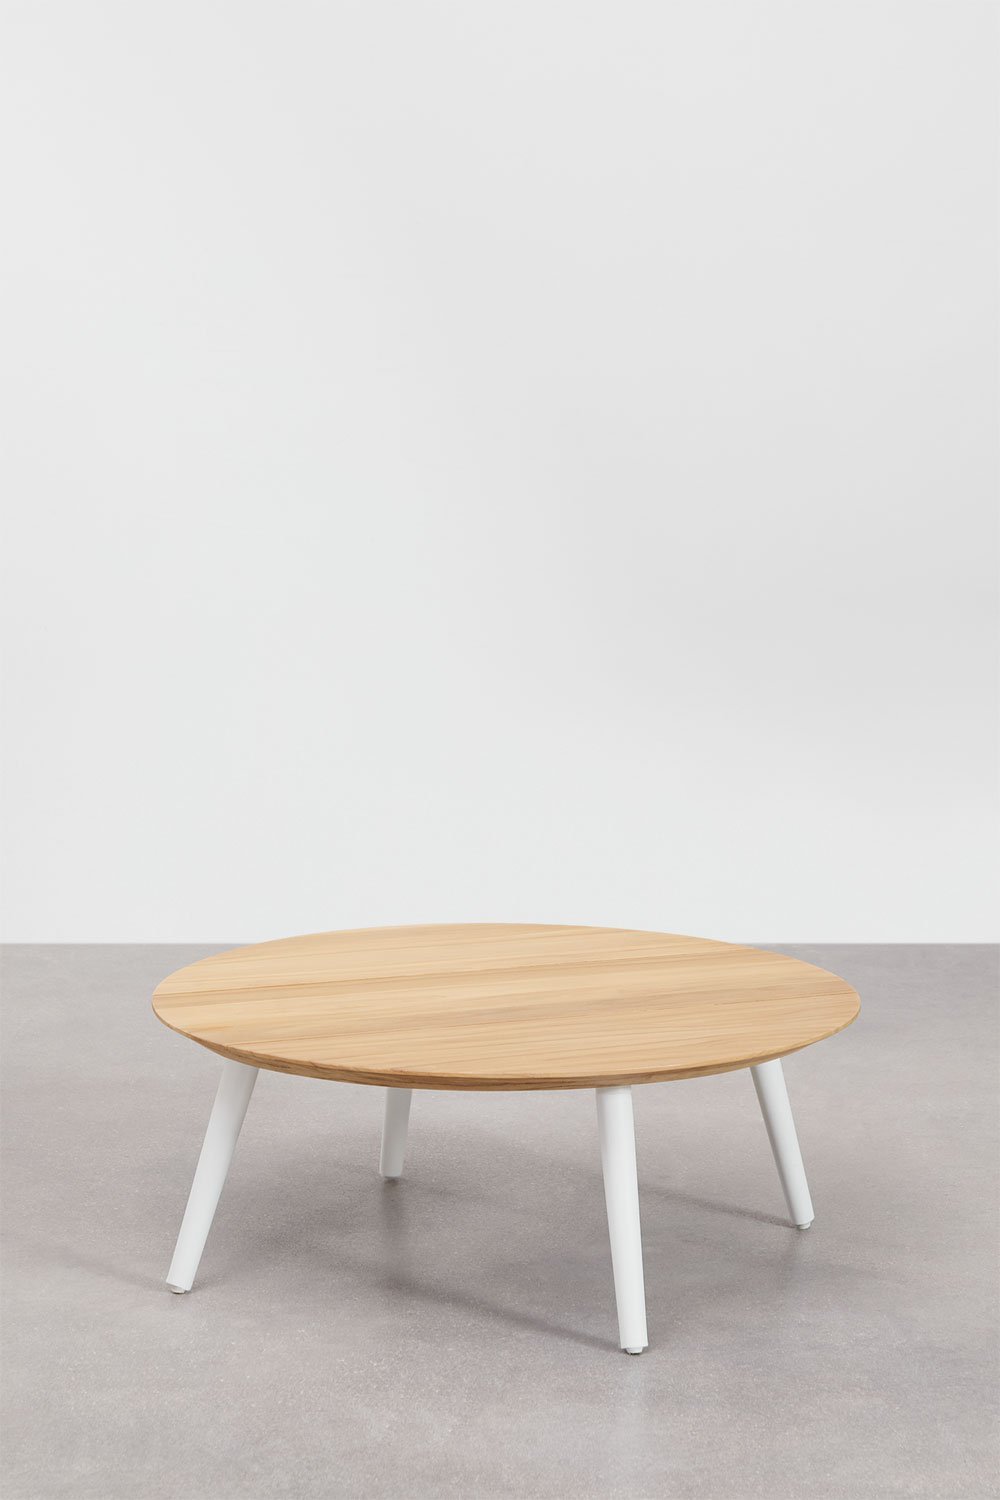 Table basse de jardin ronde en bois de teck et aluminium (Ø80 cm) Salbury, image de la galerie 1